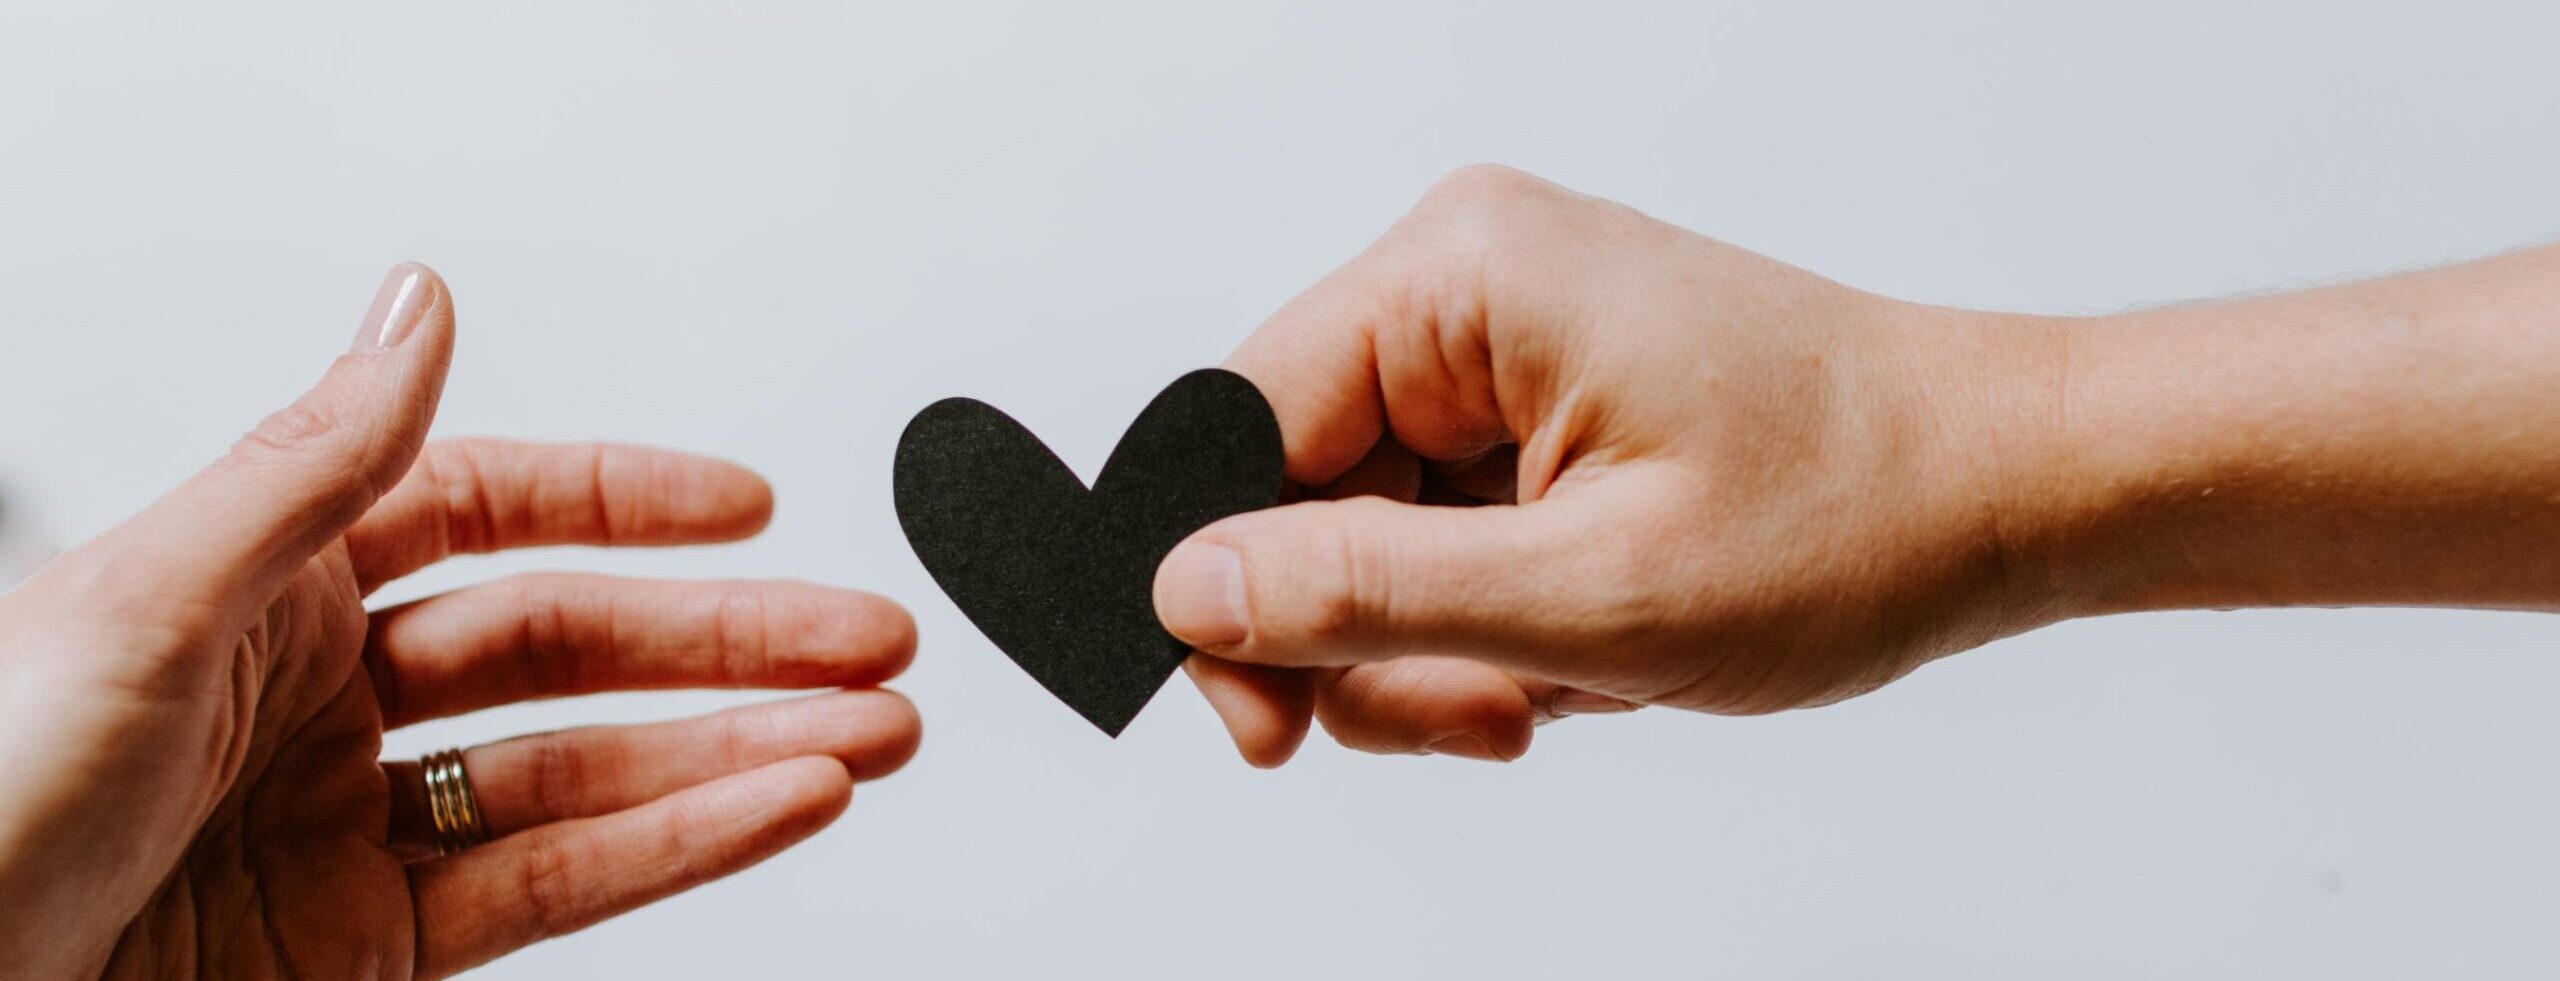 hands grabbing a black paper heart